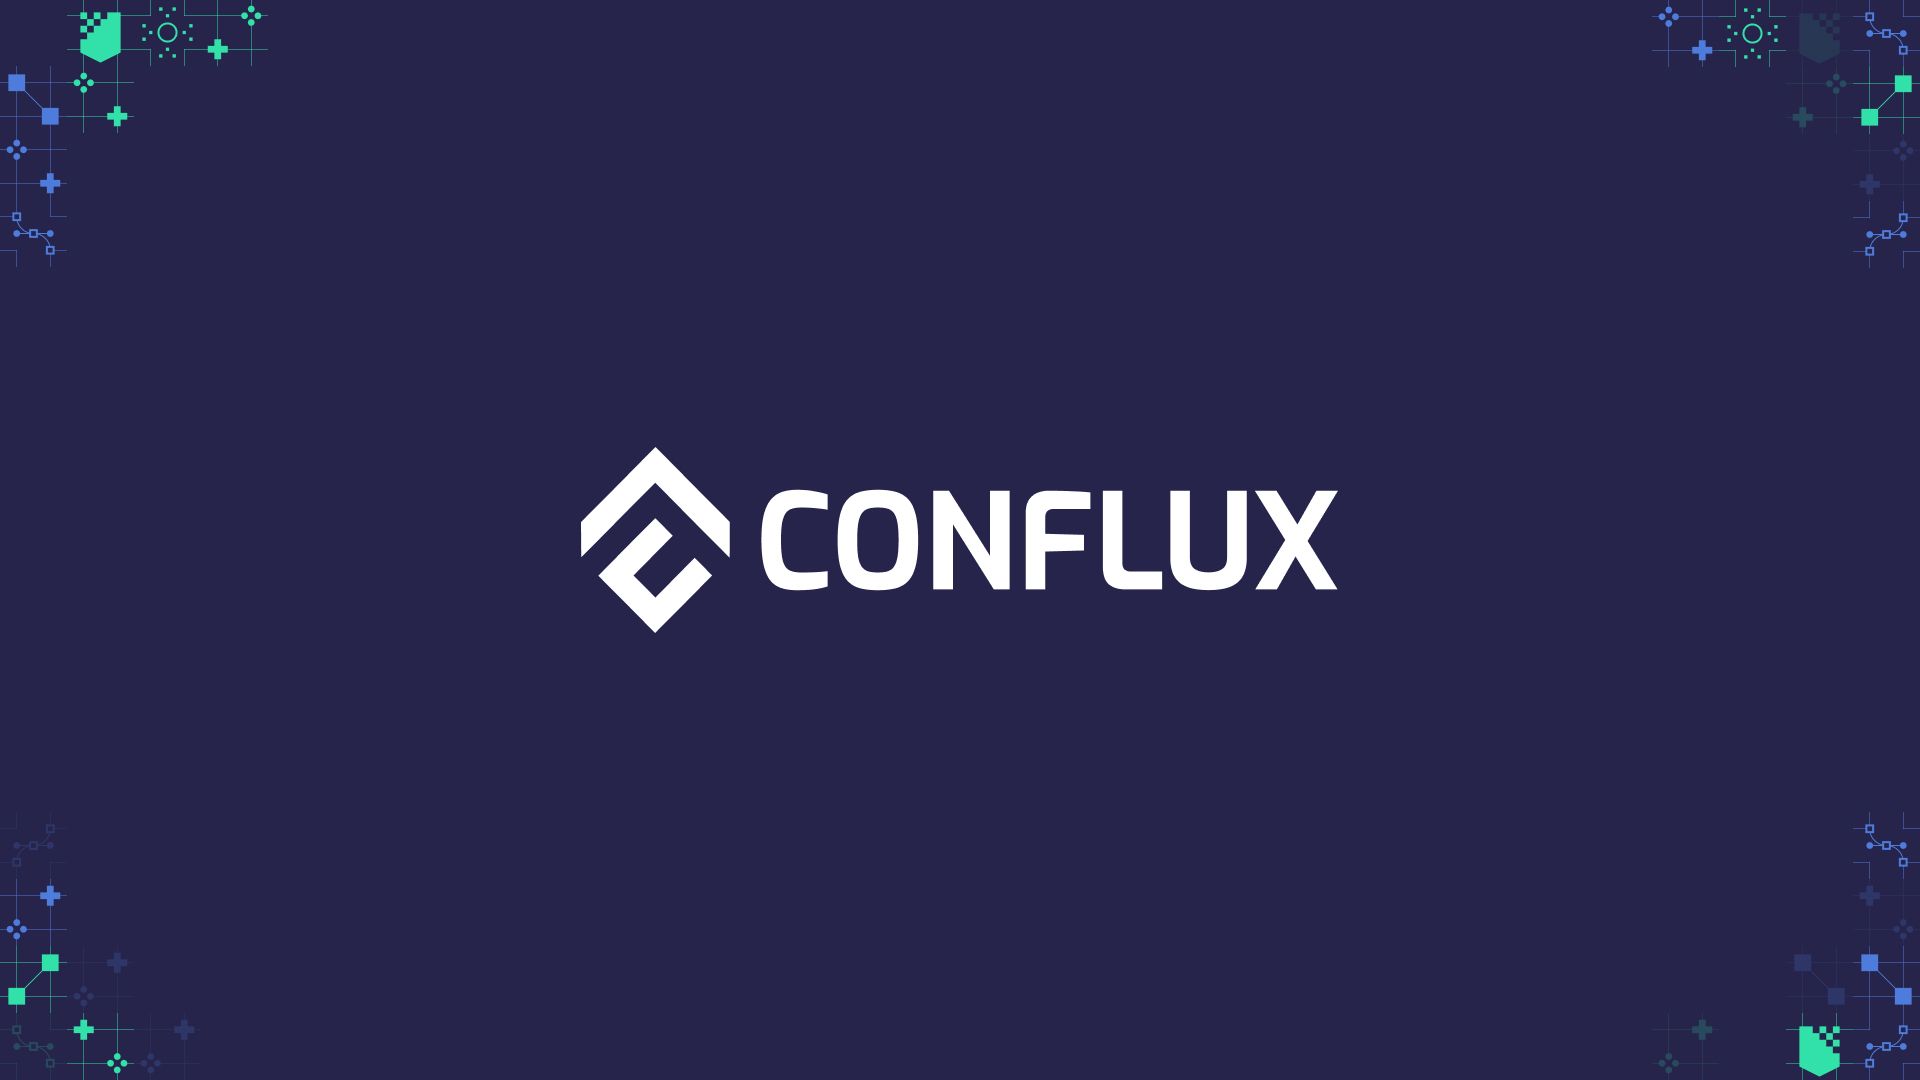 Conflux gana un 20% en 24 horas, emerge en el gráfico de los principales ganadores